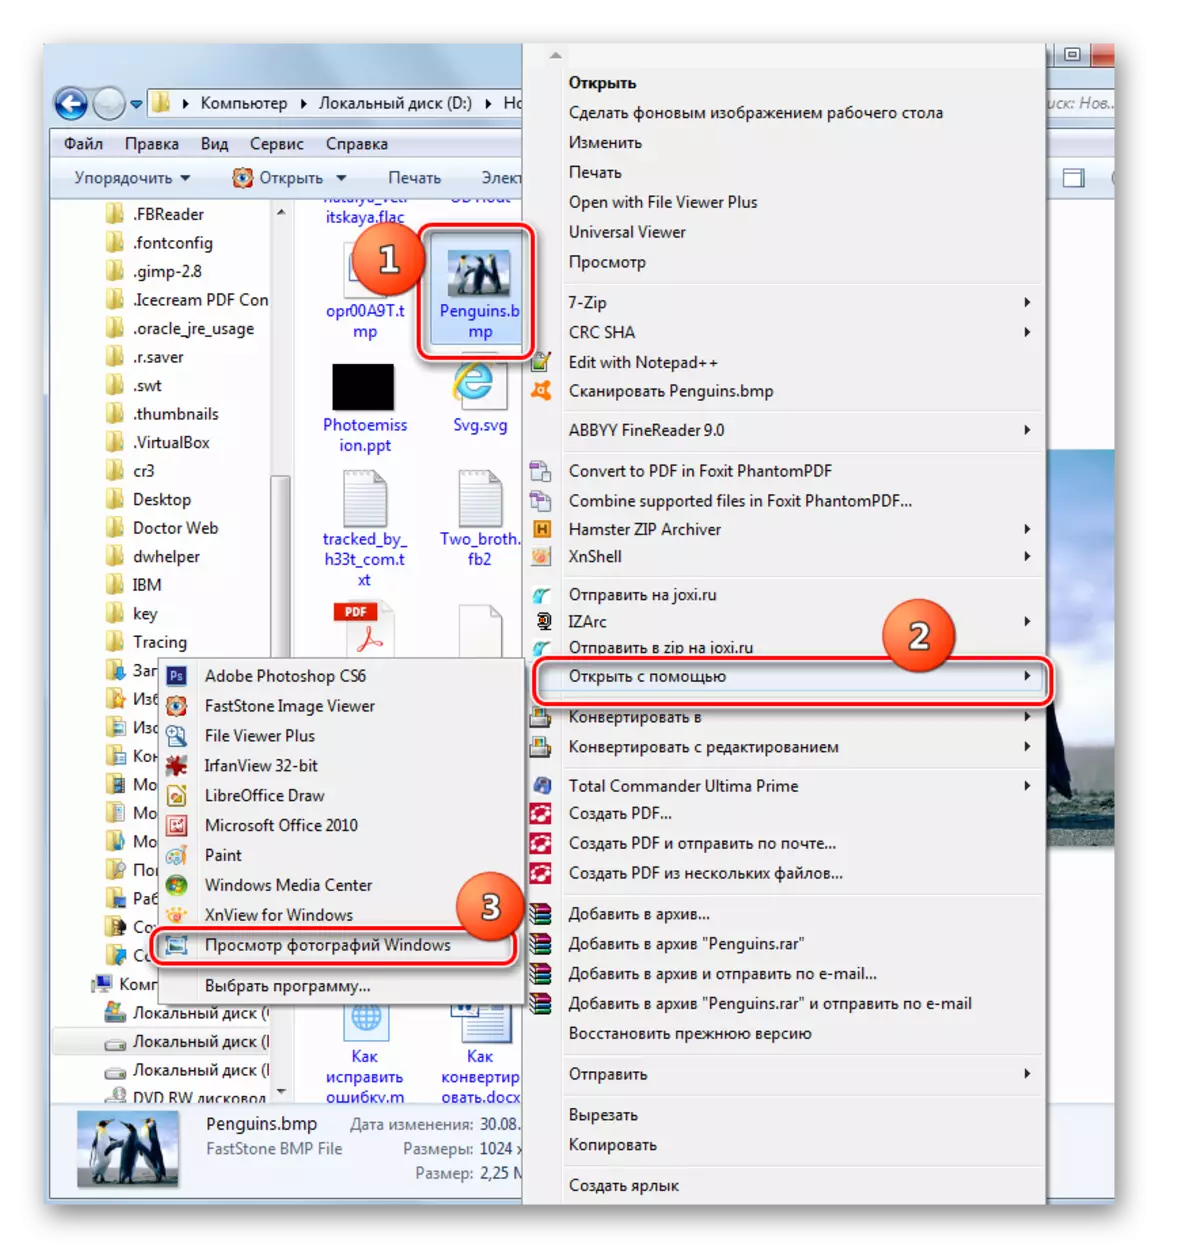 Windows 7 இல் நடத்துச்சரின் சூழலின் மெனுவில் ஜன்னல்களின் புகைப்படங்களைப் பார்க்கும் கருவியைப் பயன்படுத்தி BMP கோப்பு திறப்பு சாளரம்